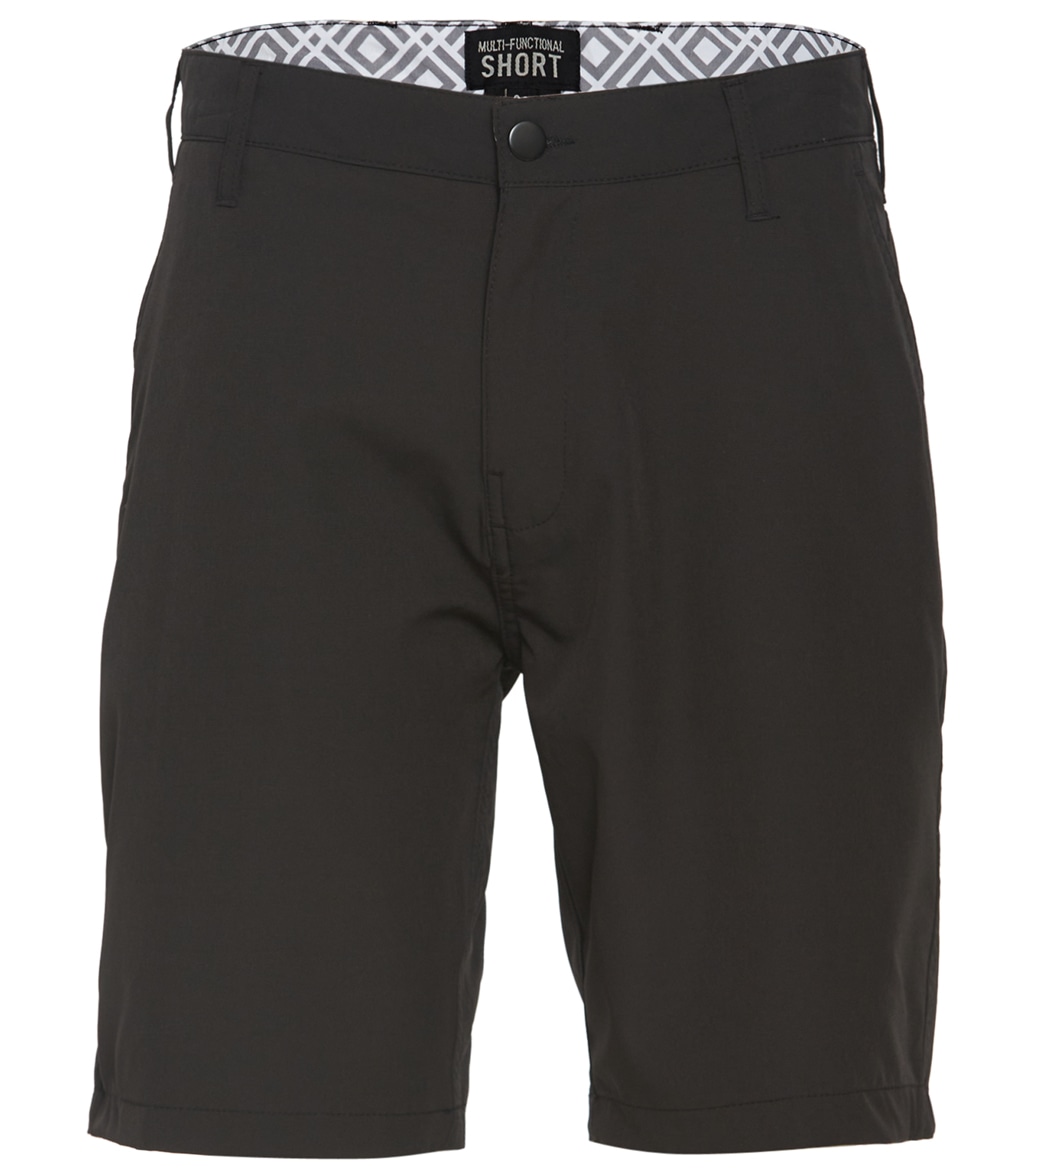 Trunks Surf & Swim Co. Men's Multi Functional Hybrid Shorts - Black 30 - Swimoutlet.com